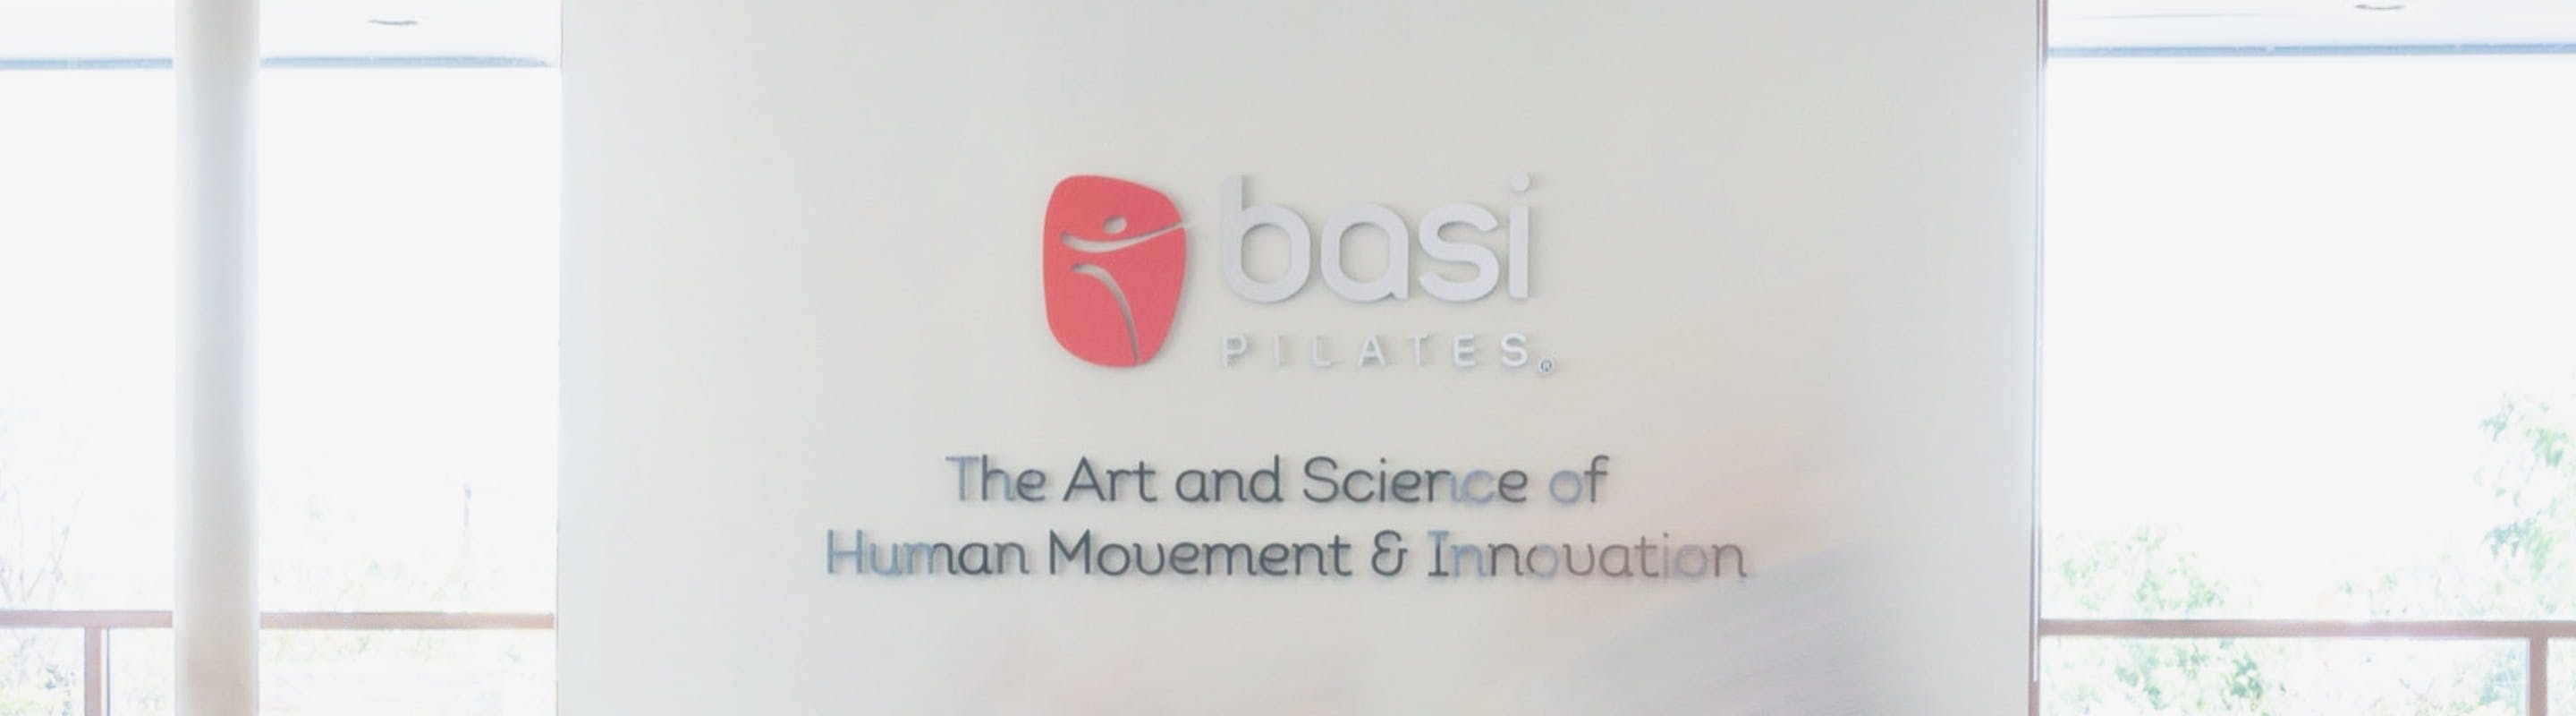 basi Pilates